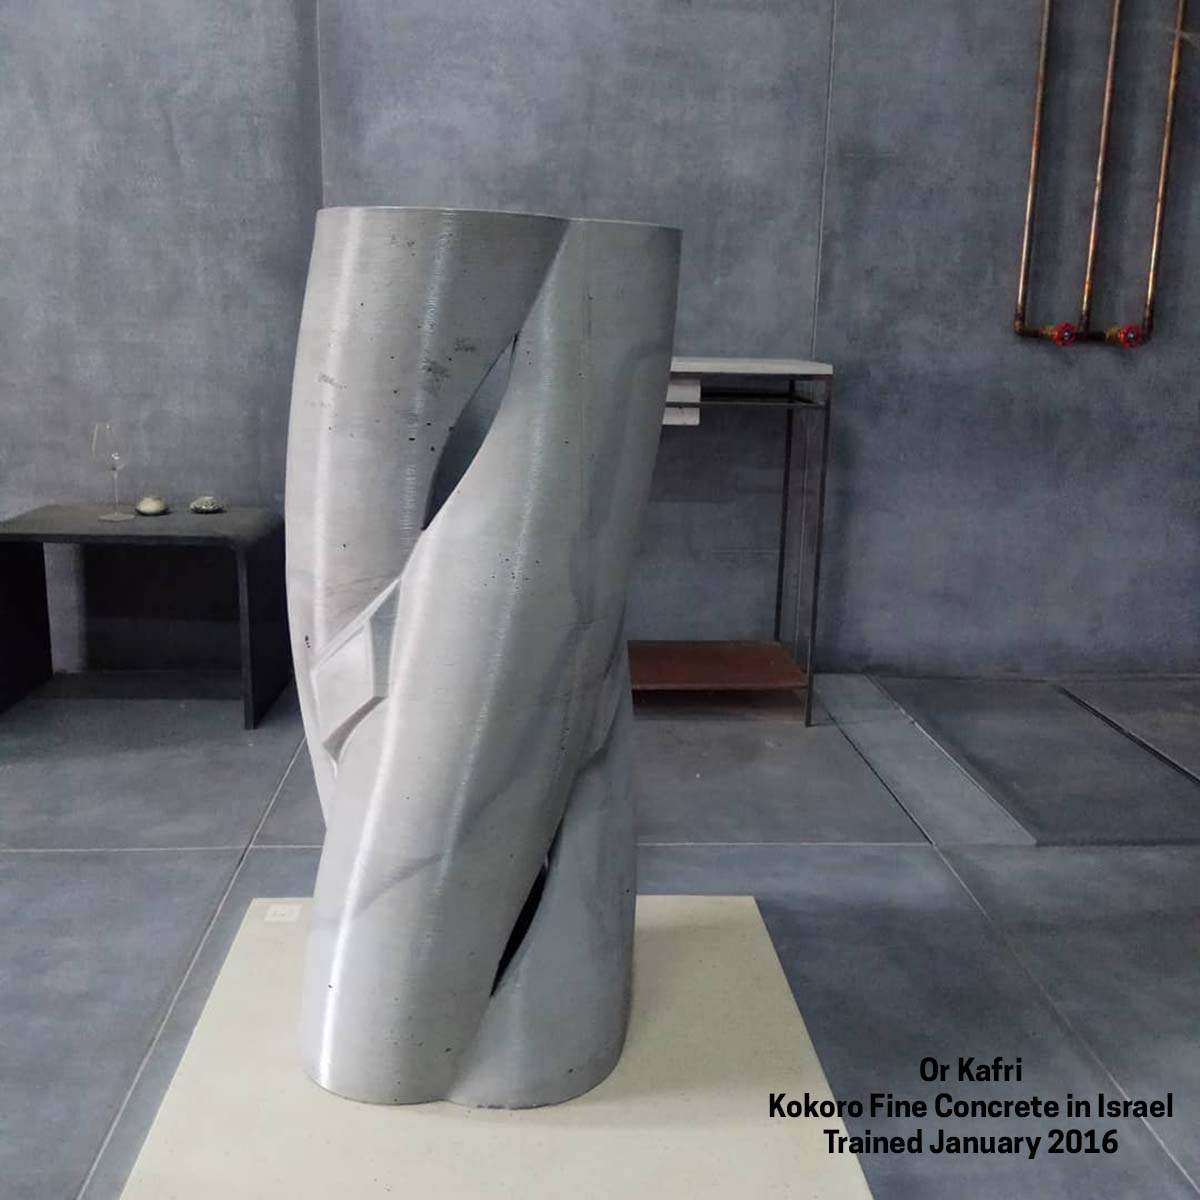 Concrete sculpture by Kokoro Fine Concrete by Kafri in Israel